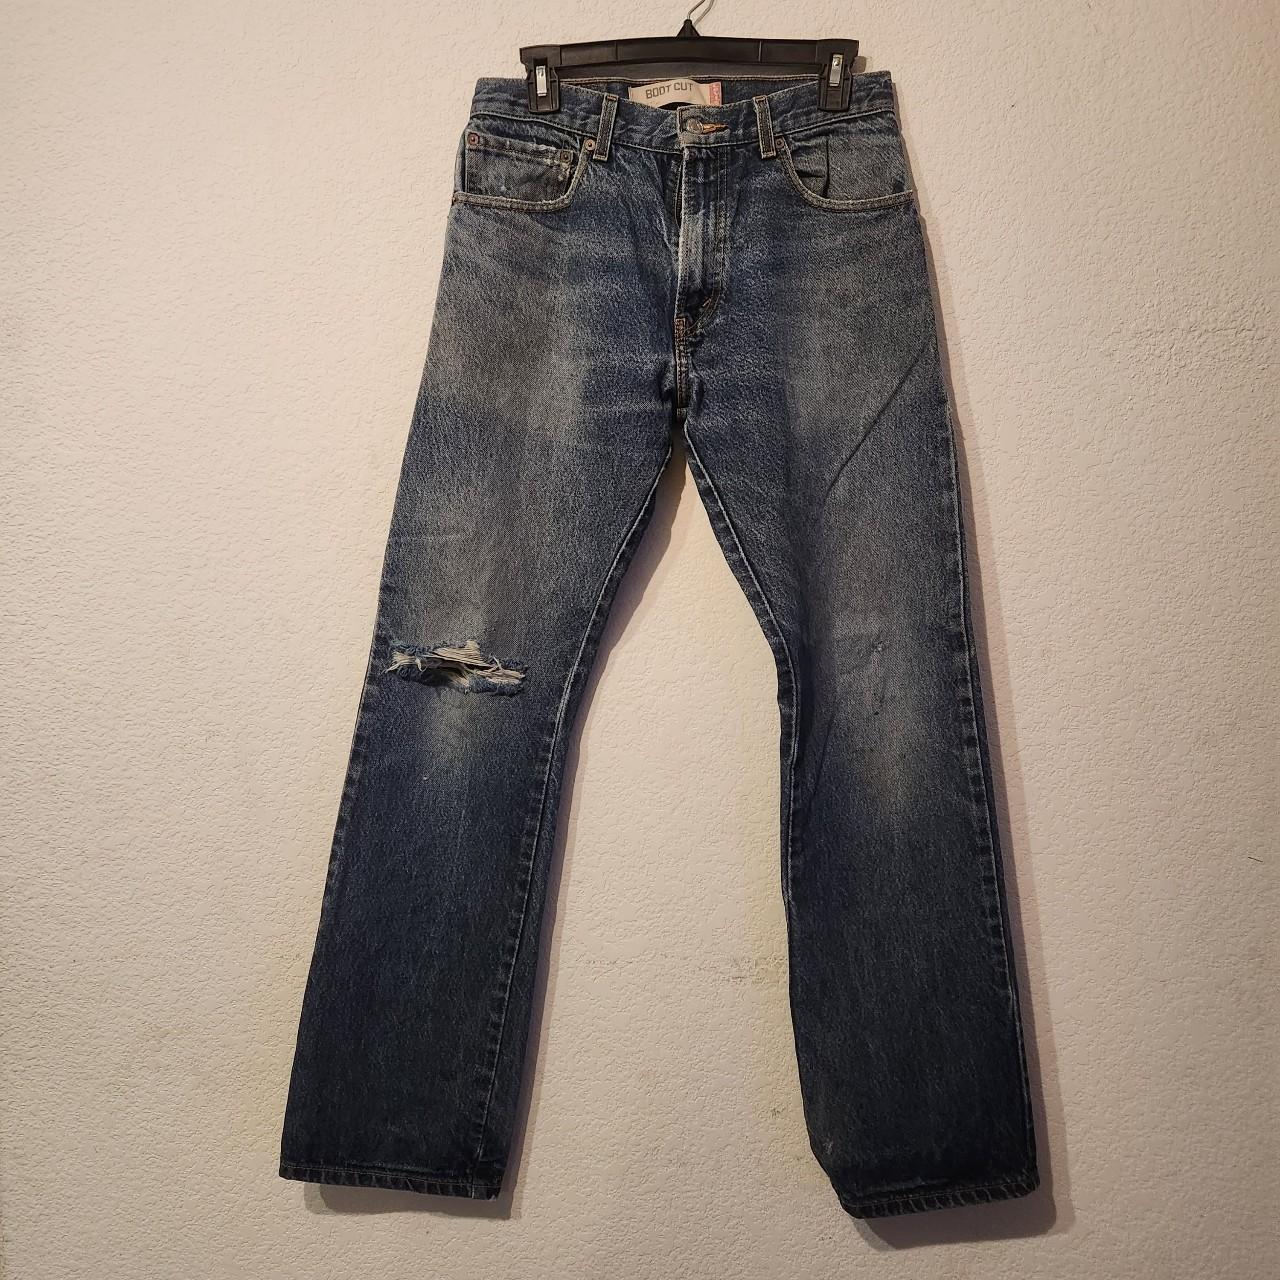 Vintage Levi's 517 Distressed But Cut Denim Jeans... - Depop